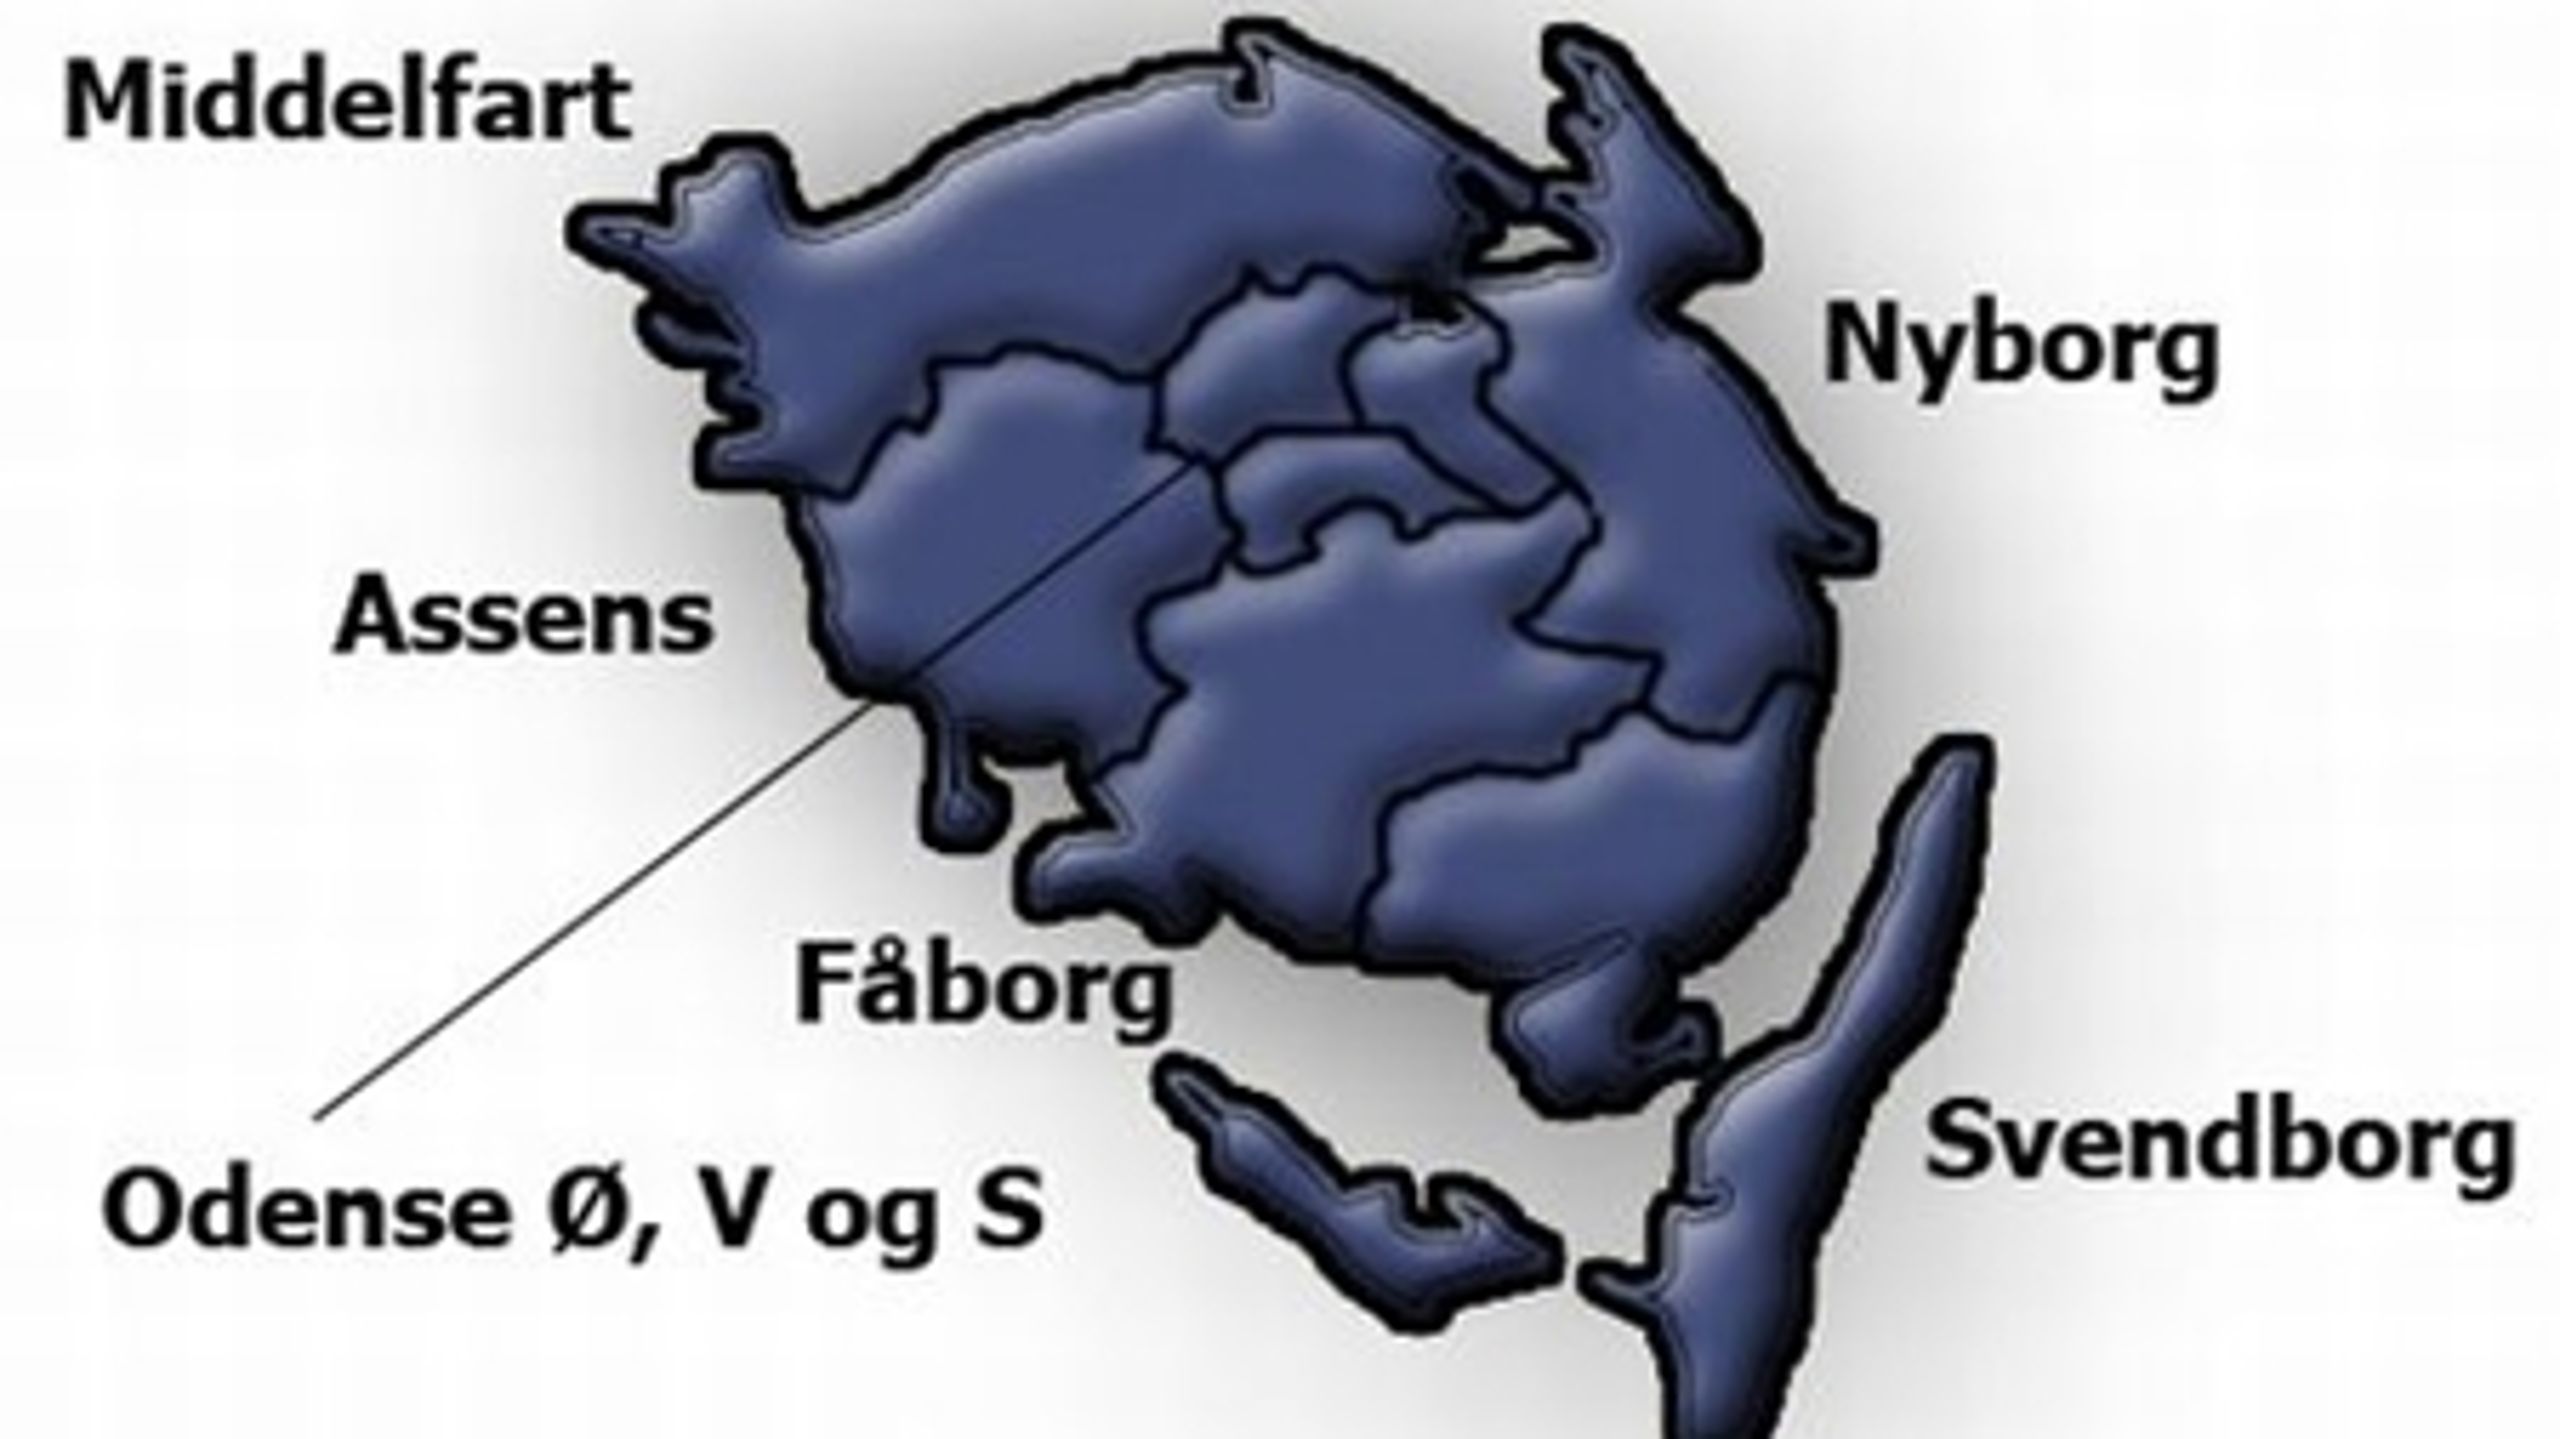 Fyns Storkreds er præget af de mange ledige stemmer, som Bendt Bendtsen (K) og Kristian Thulesen Dahl (DF) har efterladt.